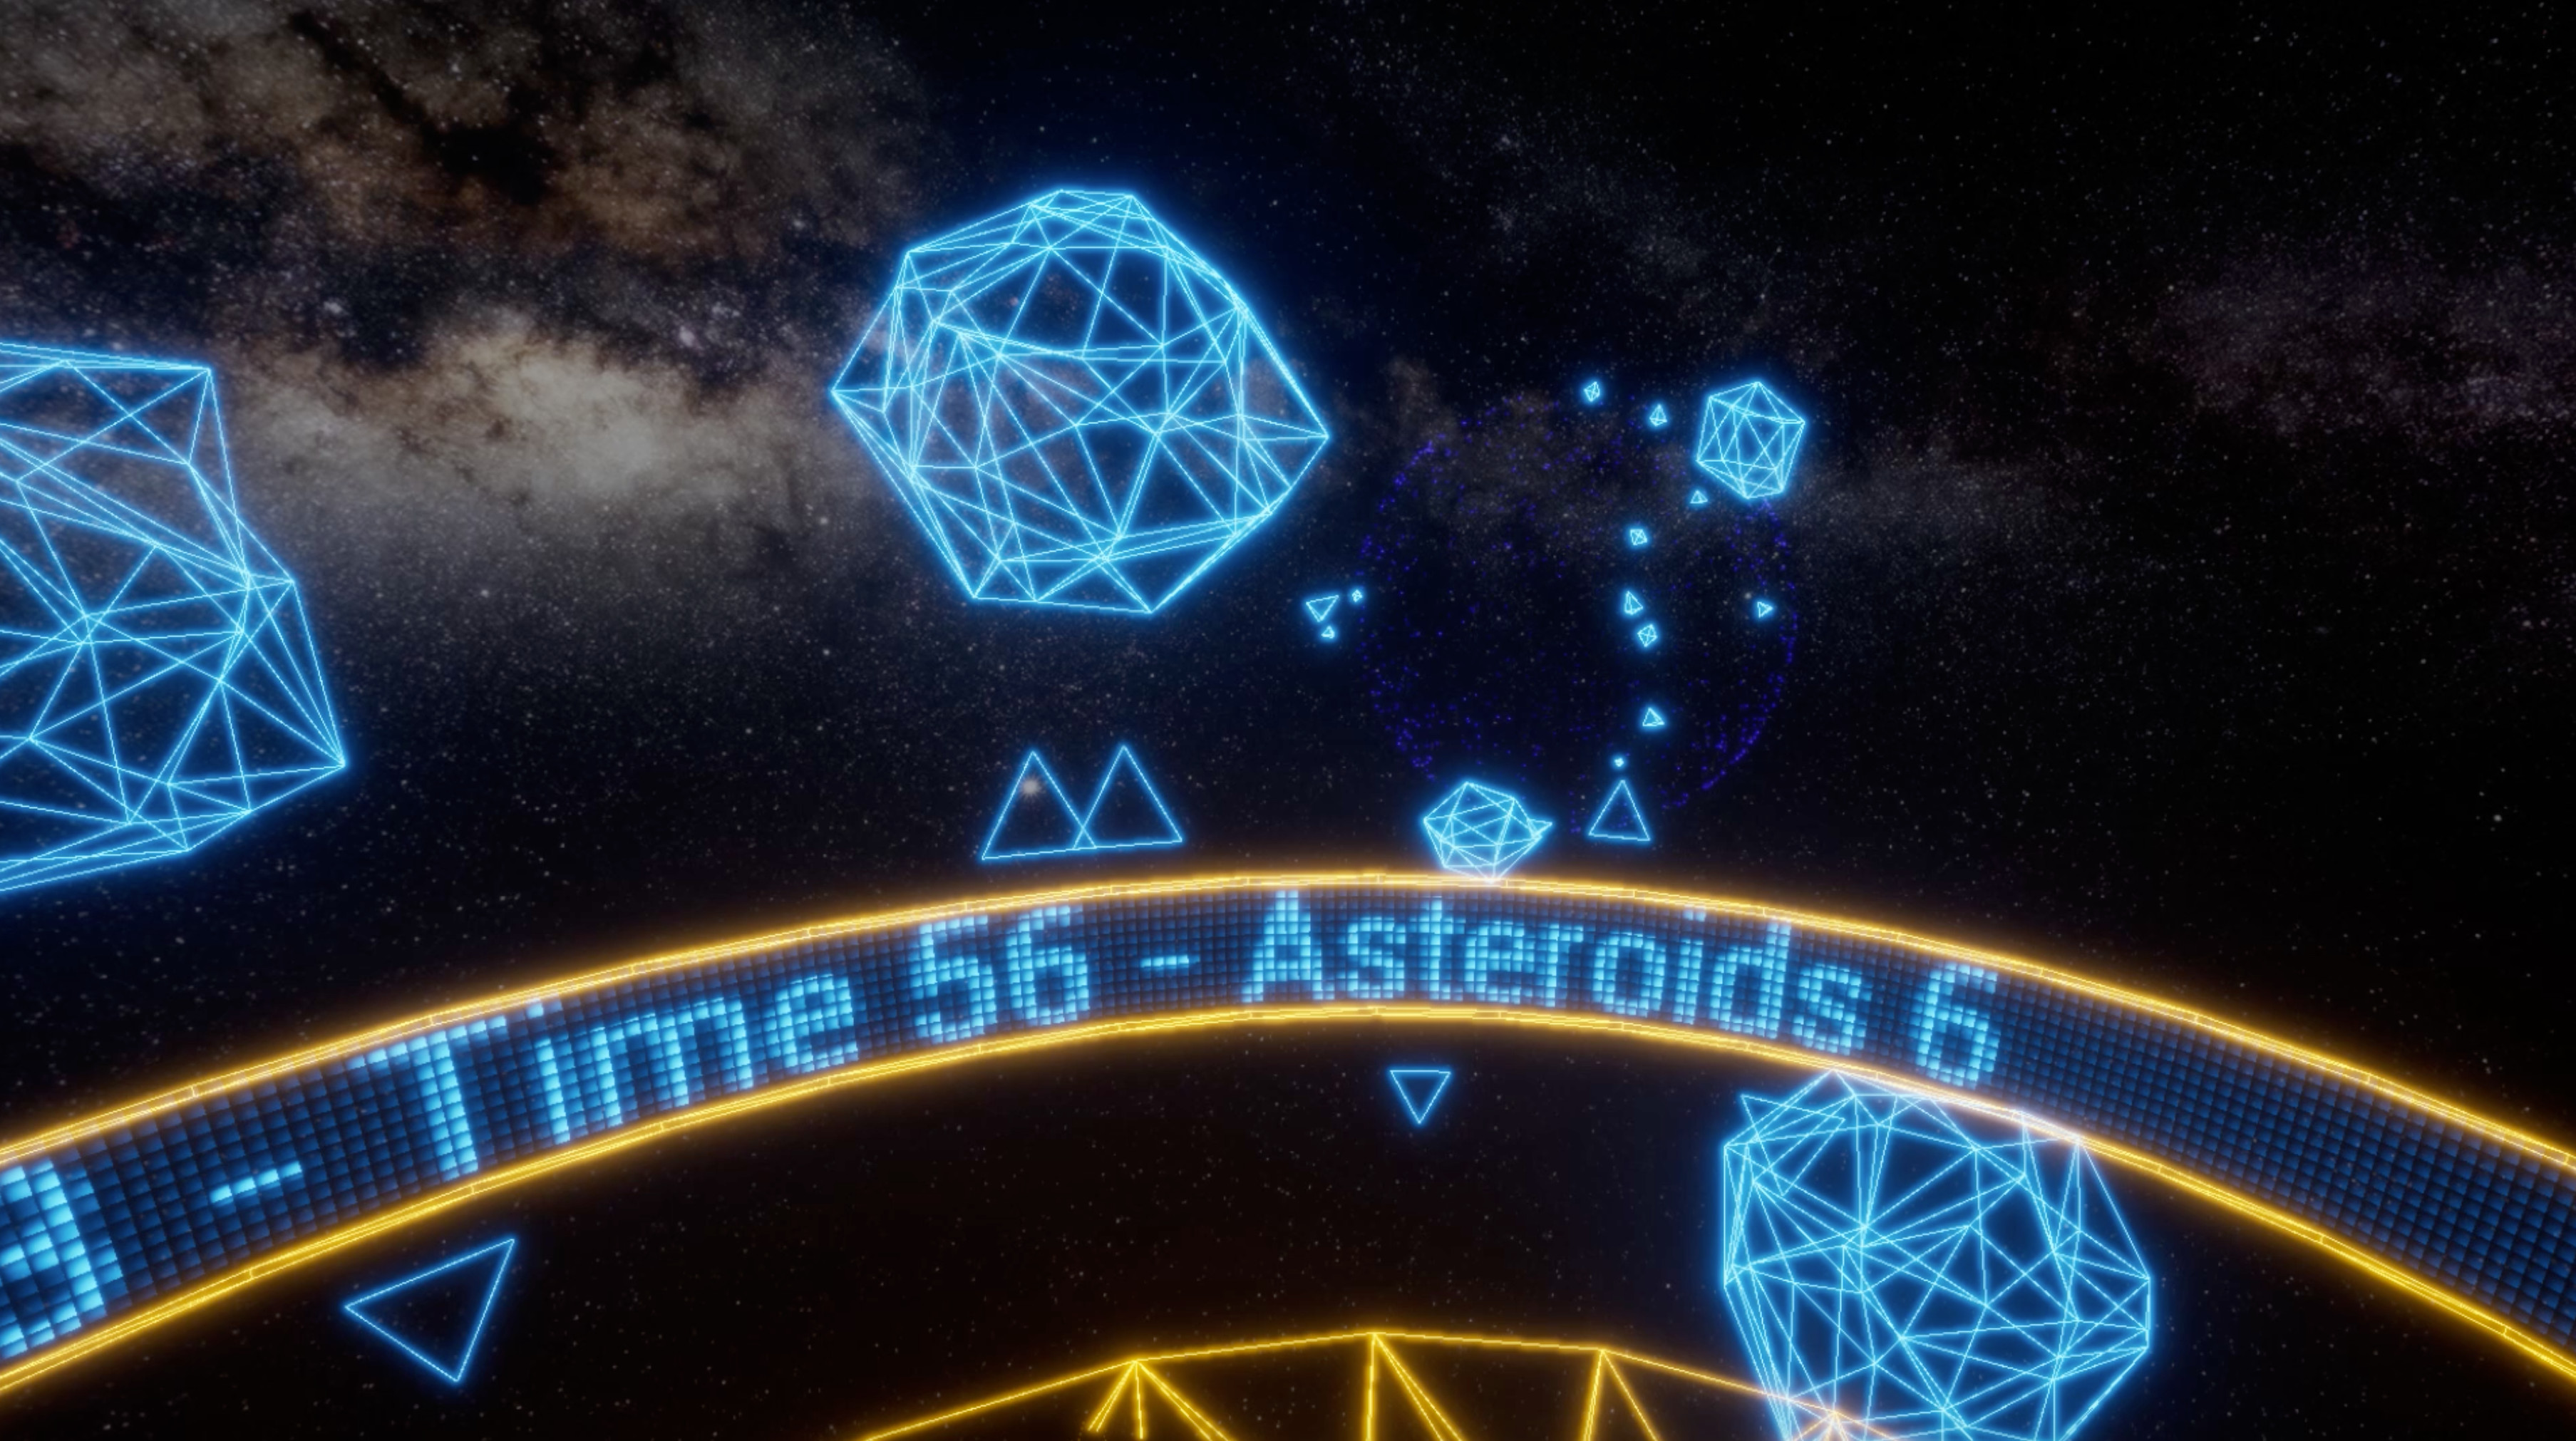 Astroroxx screenshot